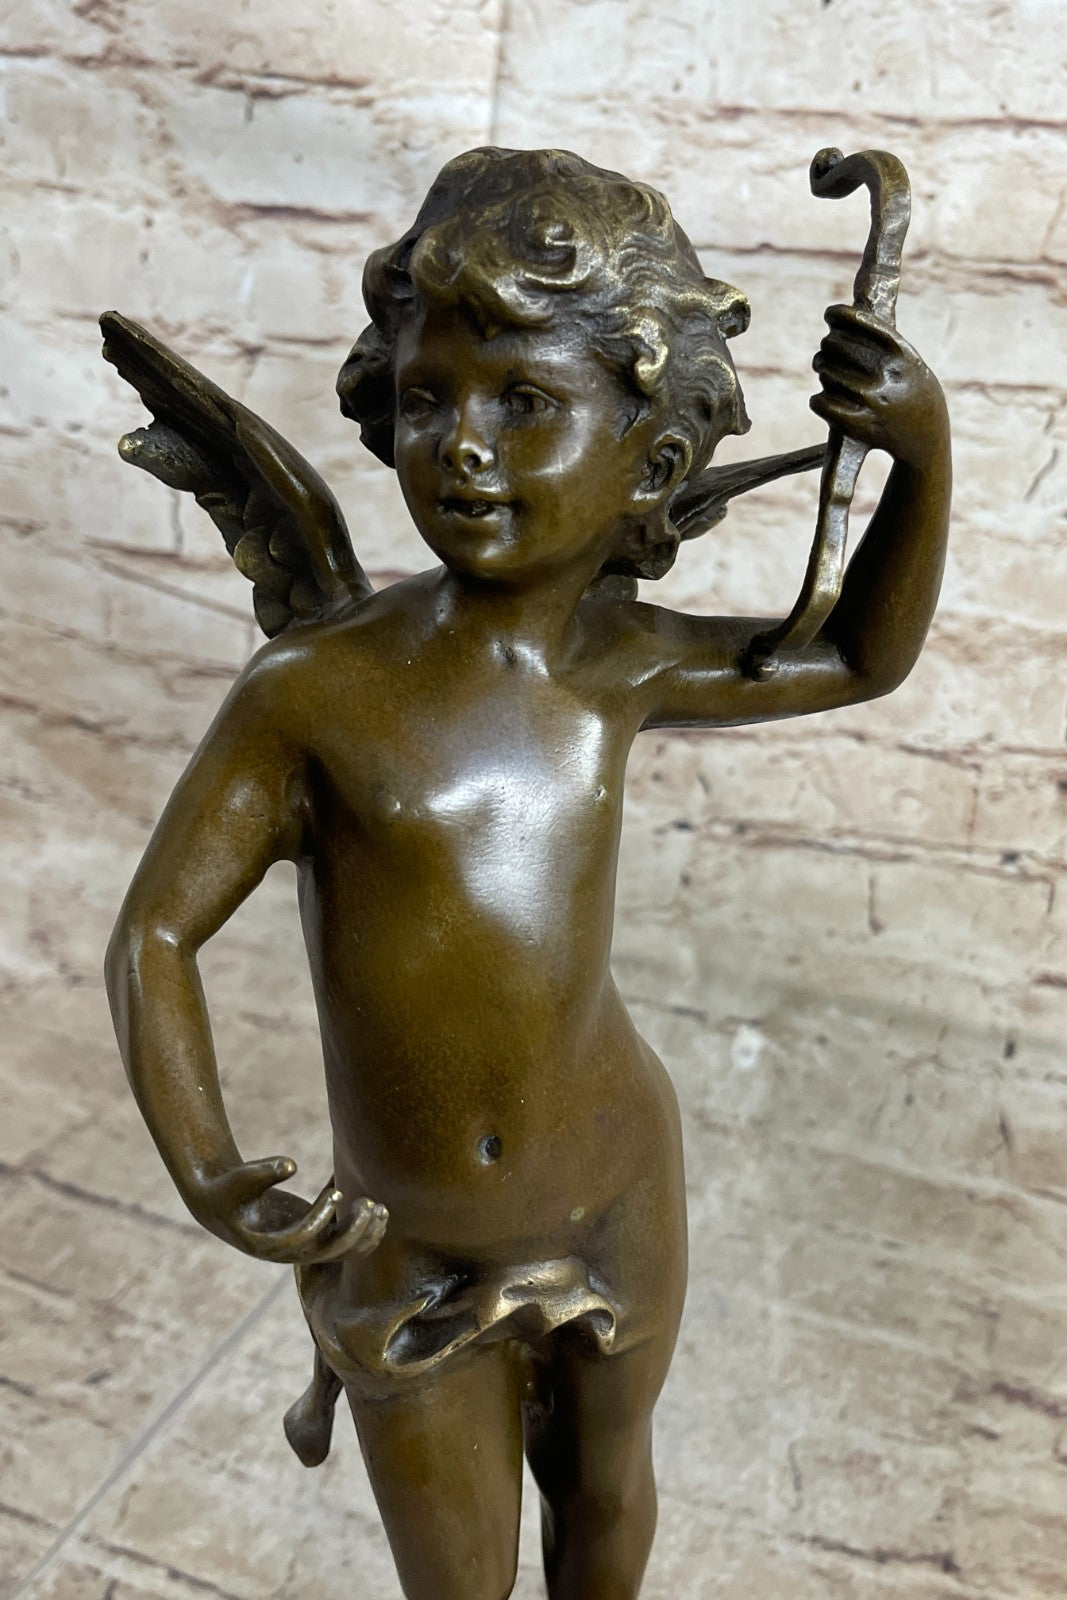 Signed: Moreau. Bronze Sculpture Nude Men Greek God Apollo Belvedere.